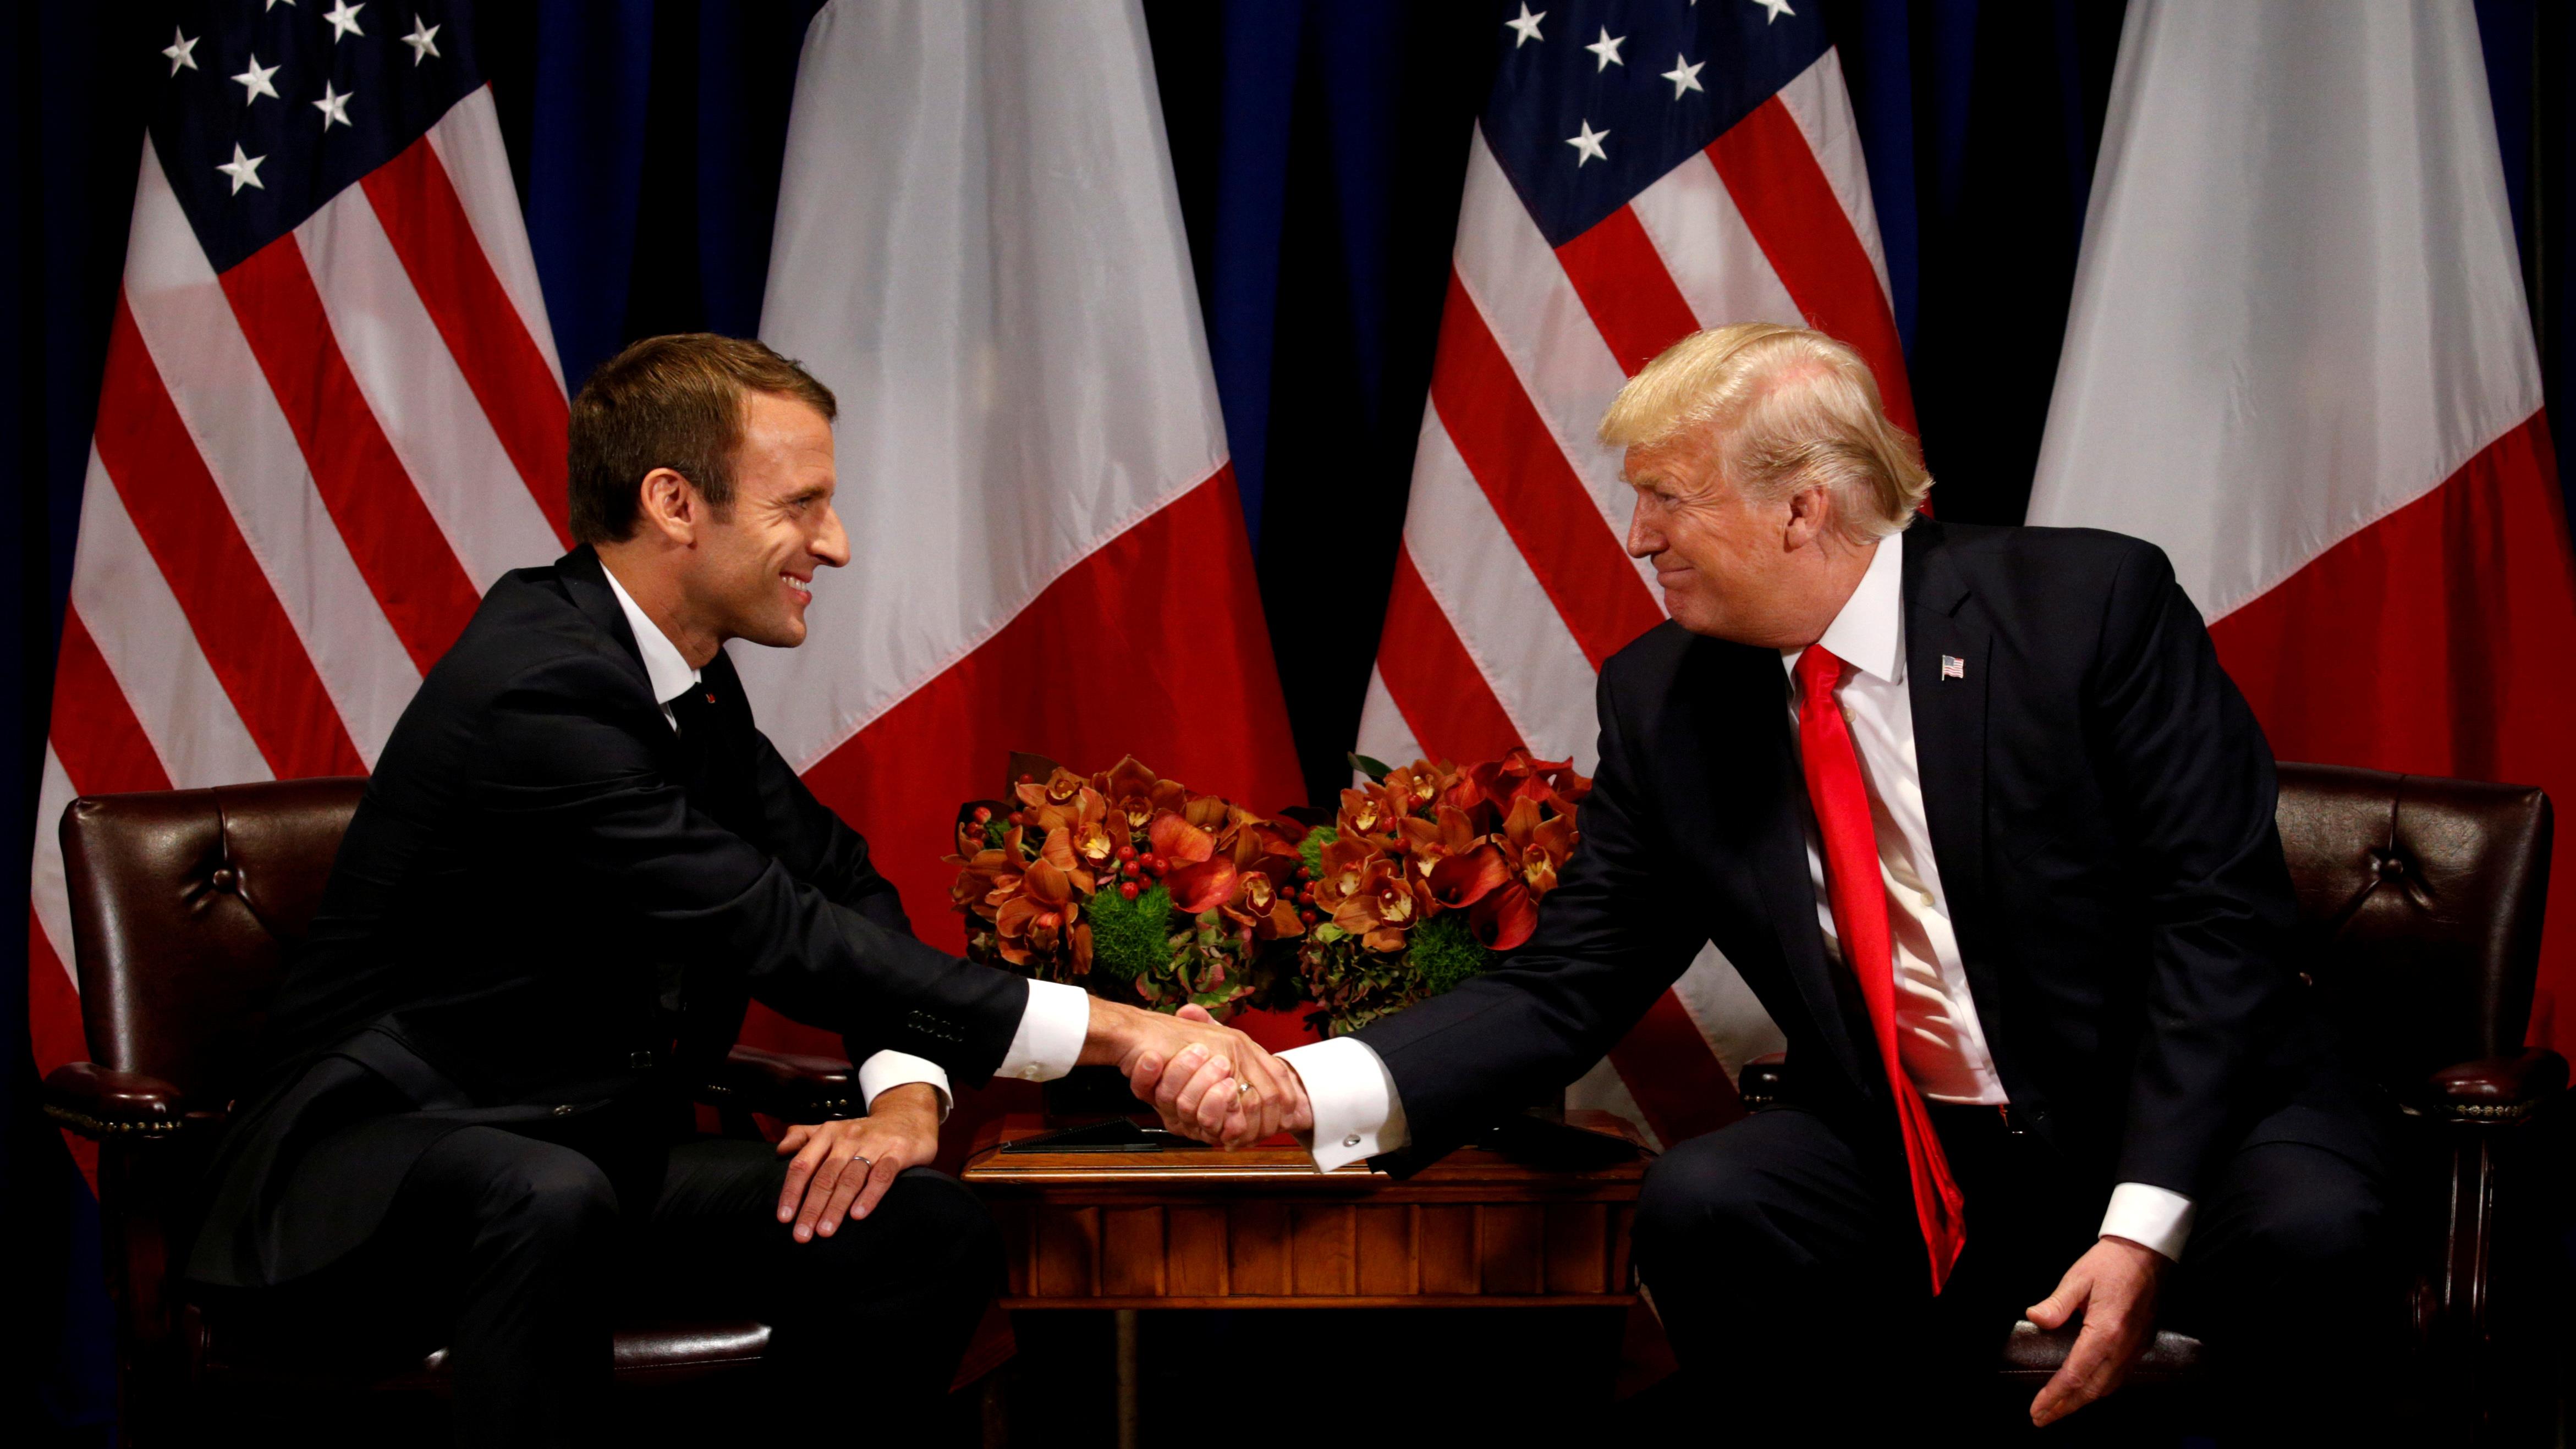 Macron, « dissident du système » à l'image de Donald Trump